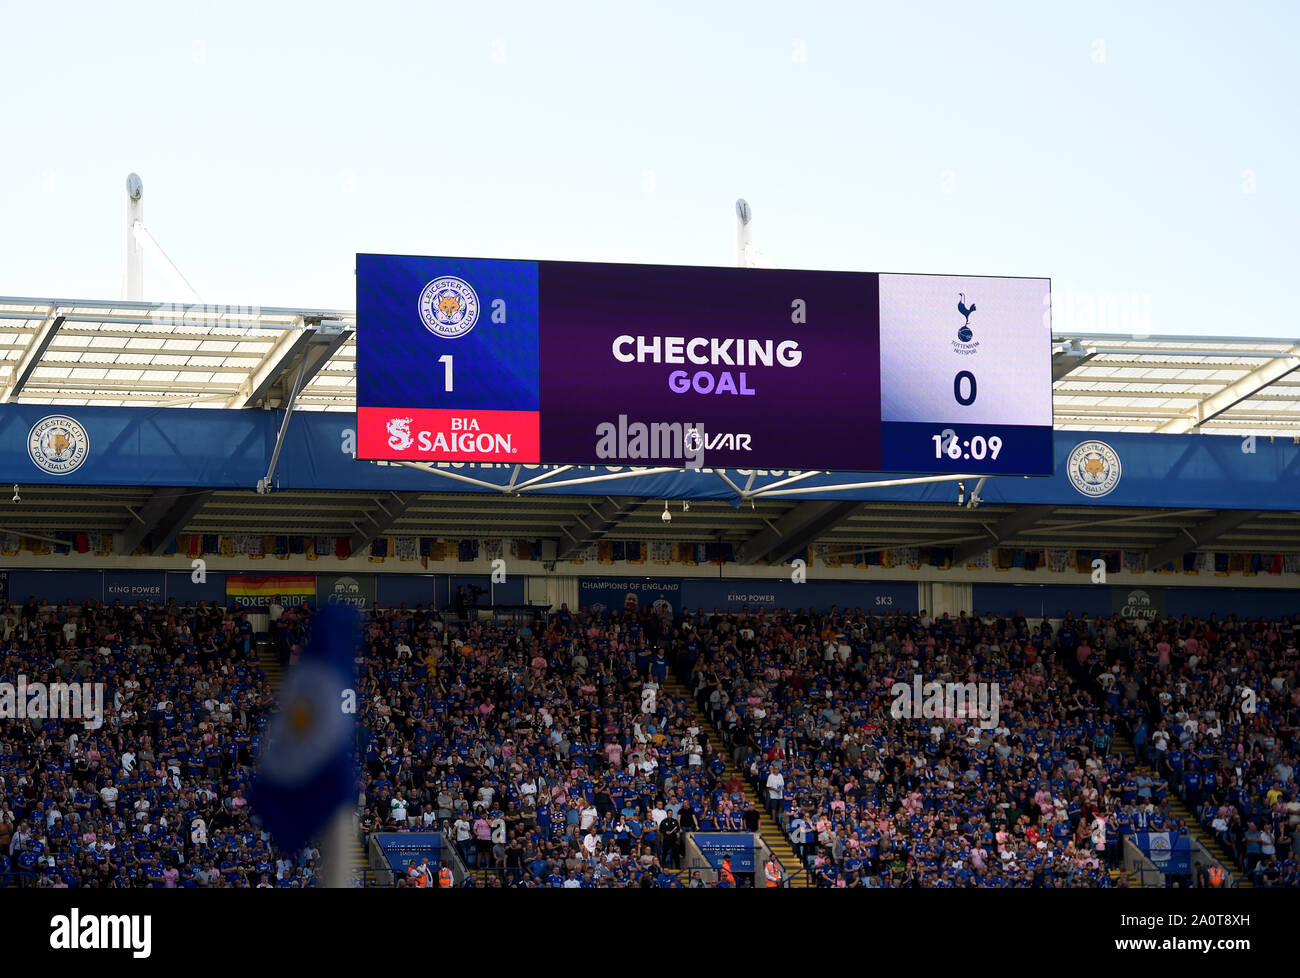 Il grande schermo non visualizza alcun obiettivo a seguito di una var di revisione dopo Leicester City's Wilfred Ndidi (non raffigurata) aveva messo la palla in rete durante il match di Premier League al King Power Stadium, Leicester. Foto Stock